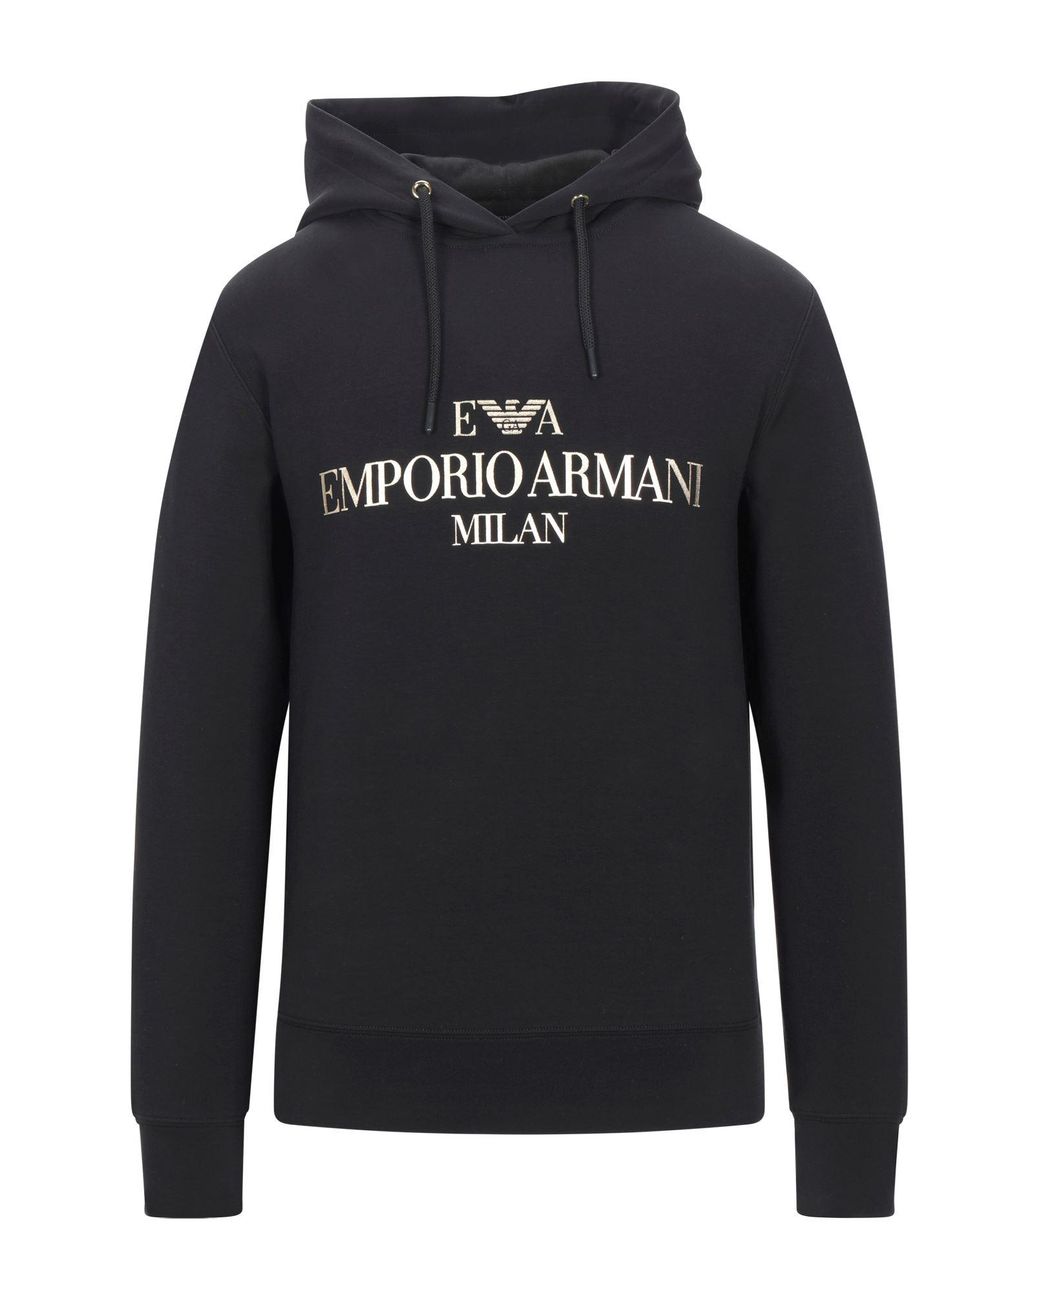 Emporio Armani Sweatshirt in Black for Men - Lyst